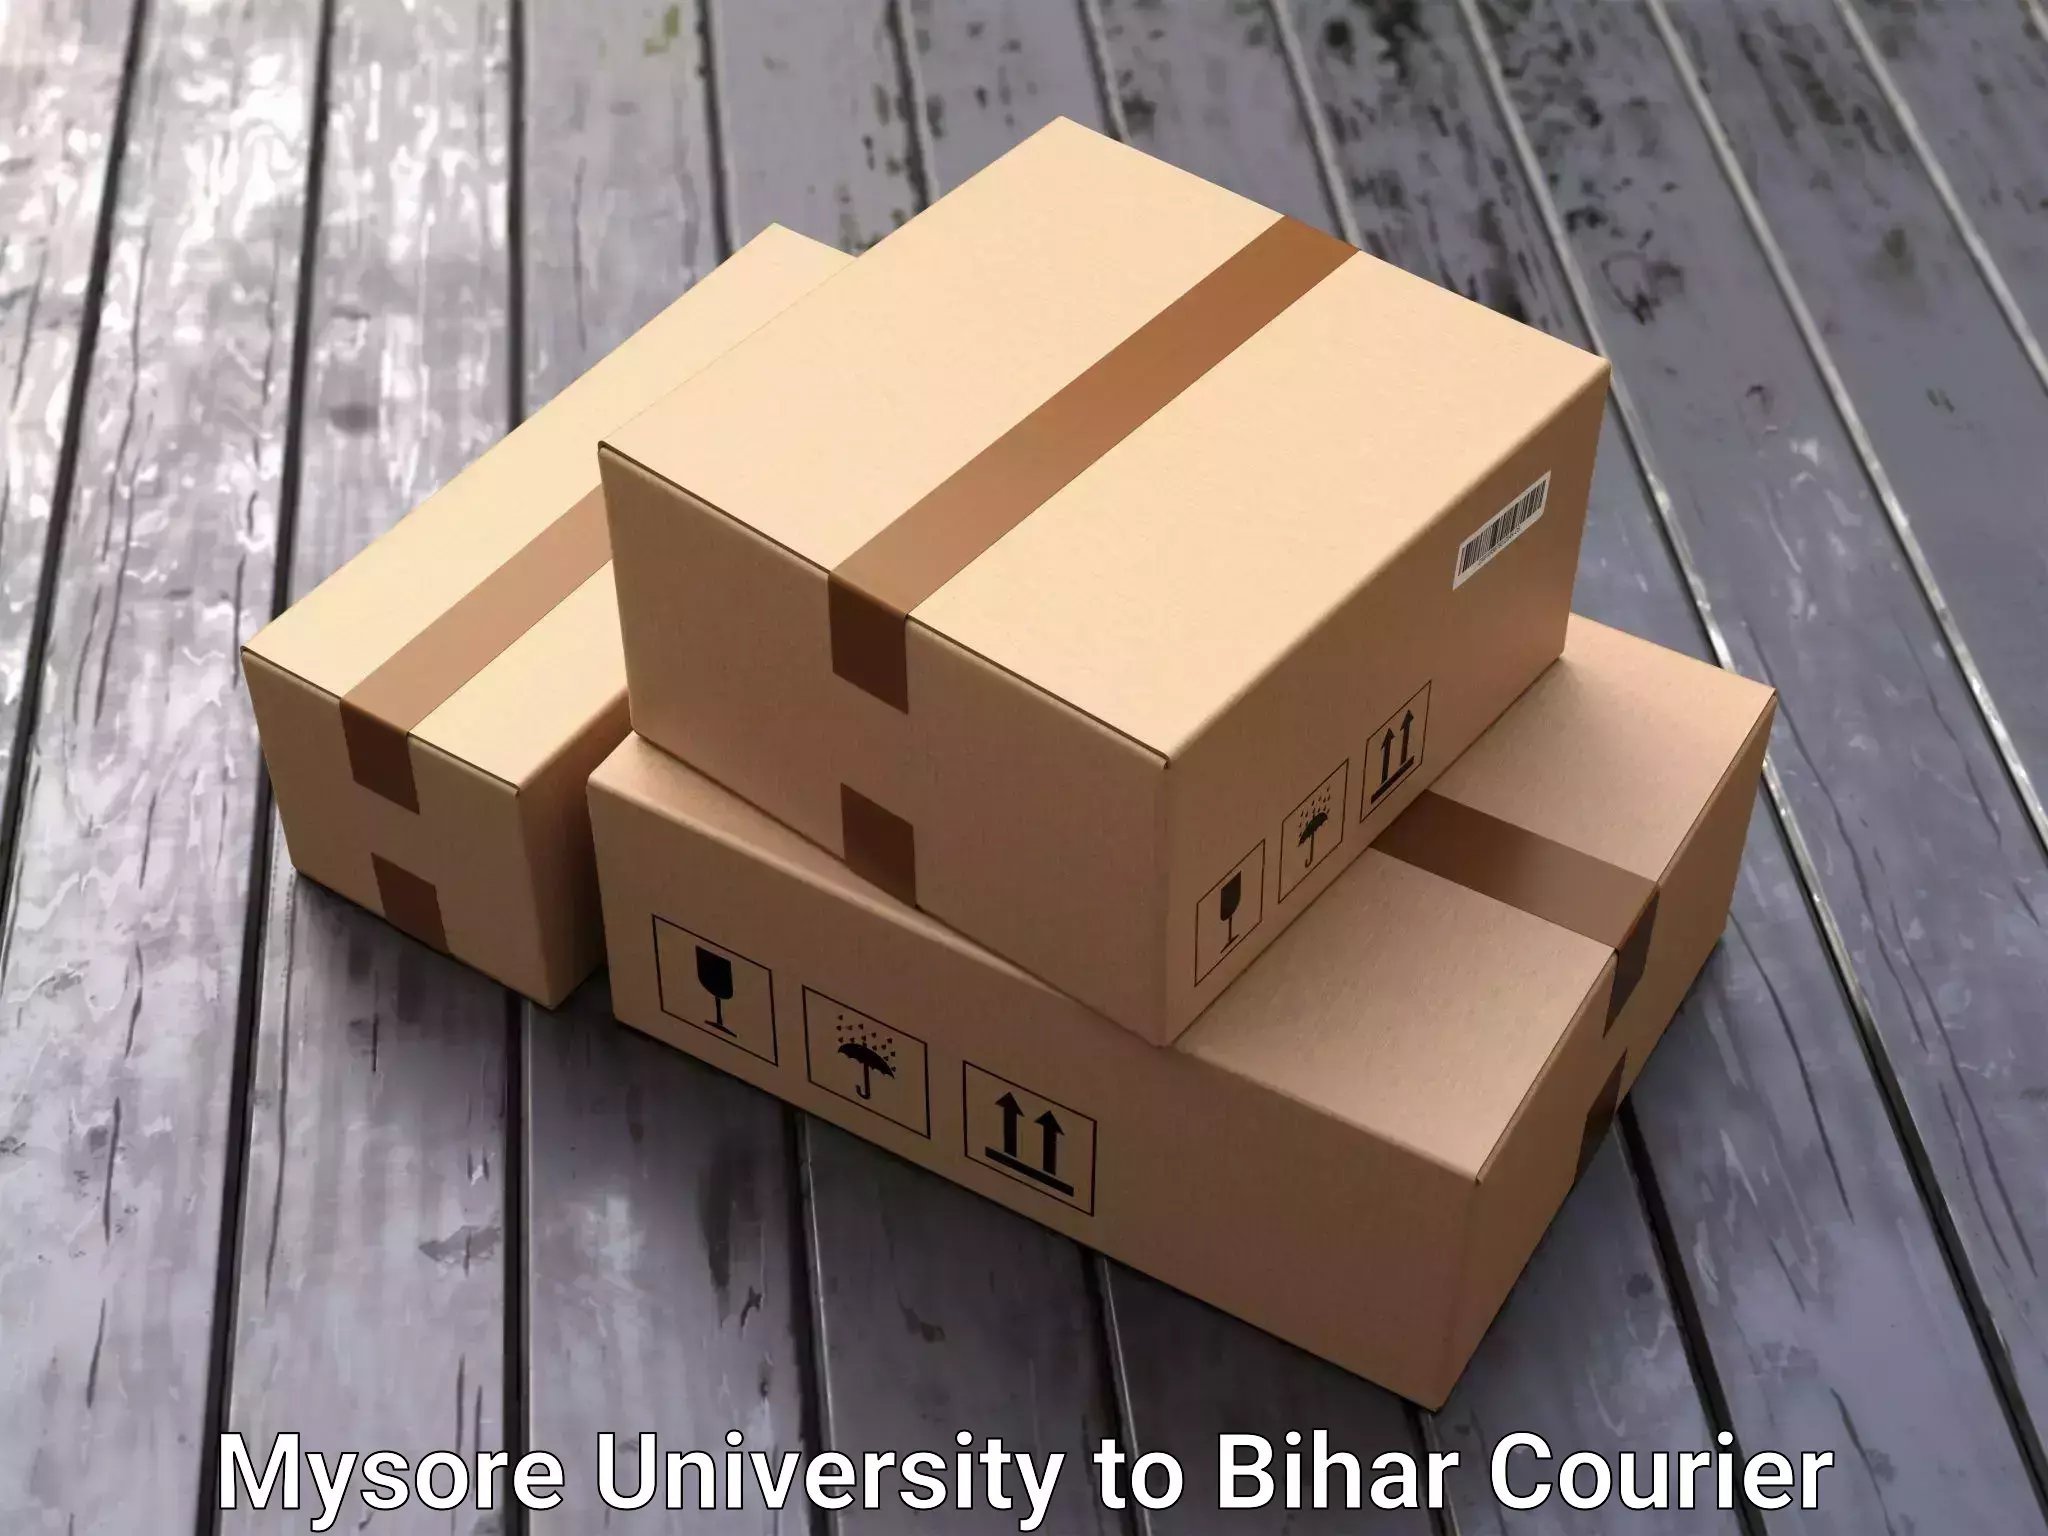 Furniture moving experts Mysore University to Bhorey